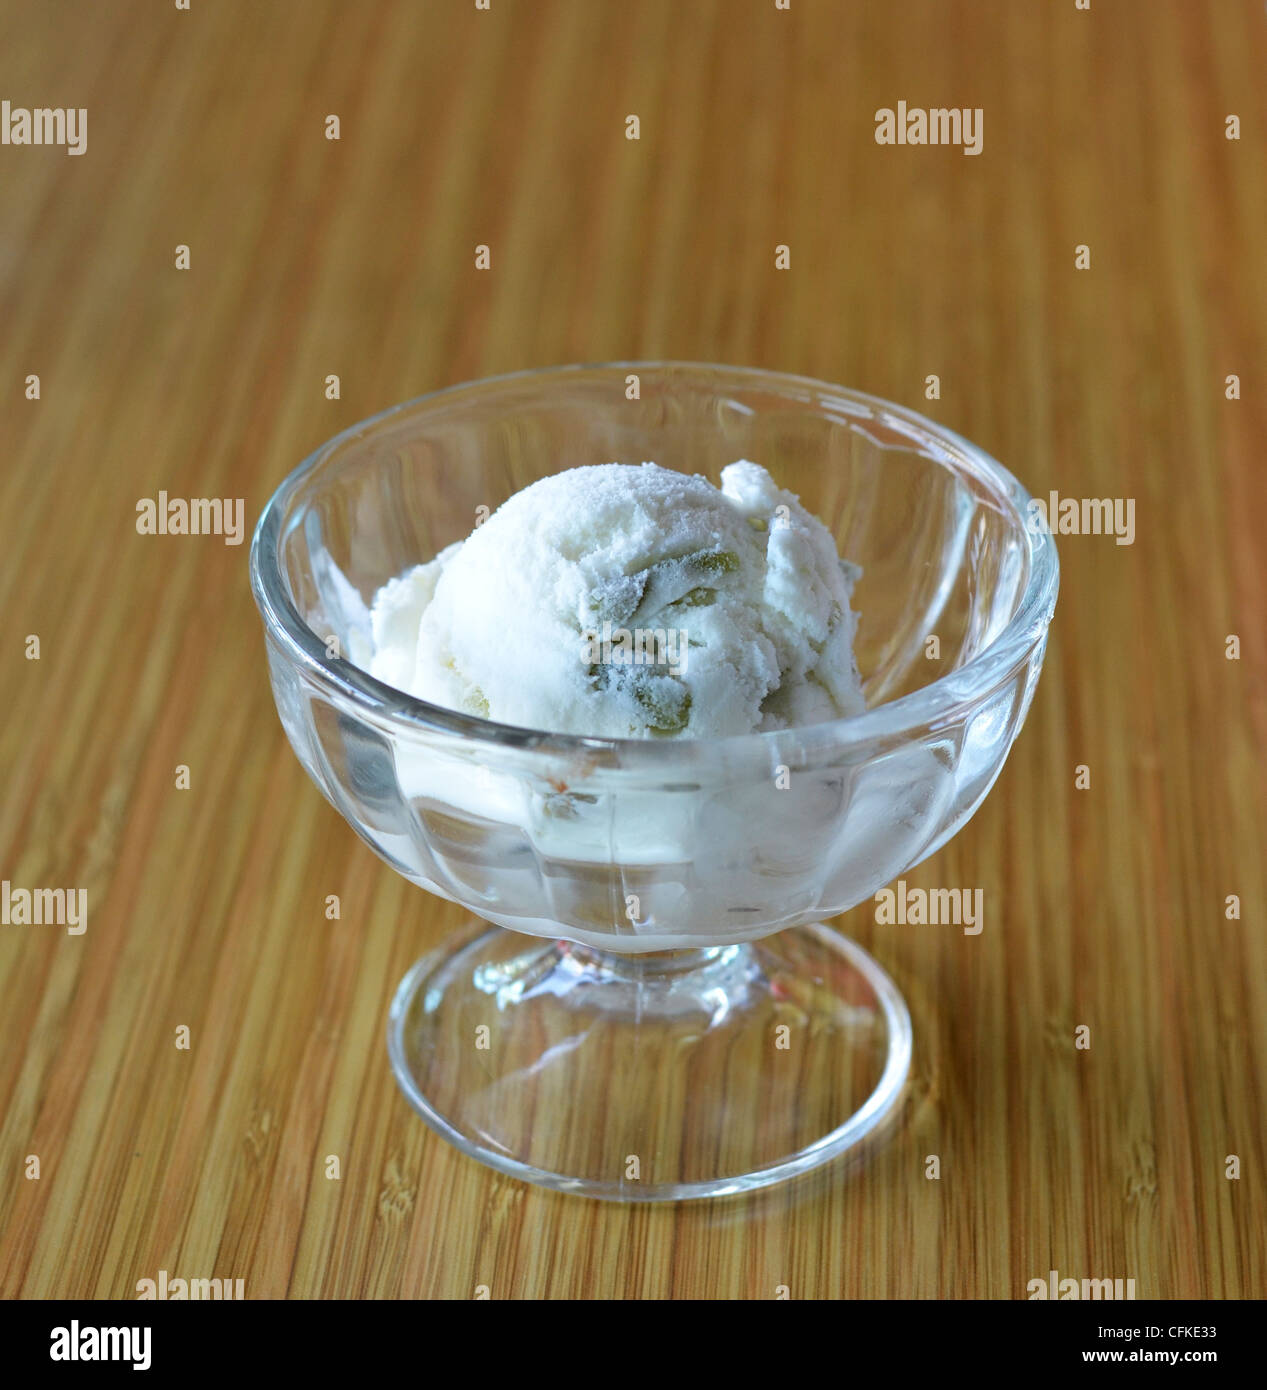 Glace coco dans un bol avec de la gelée verte Banque D'Images